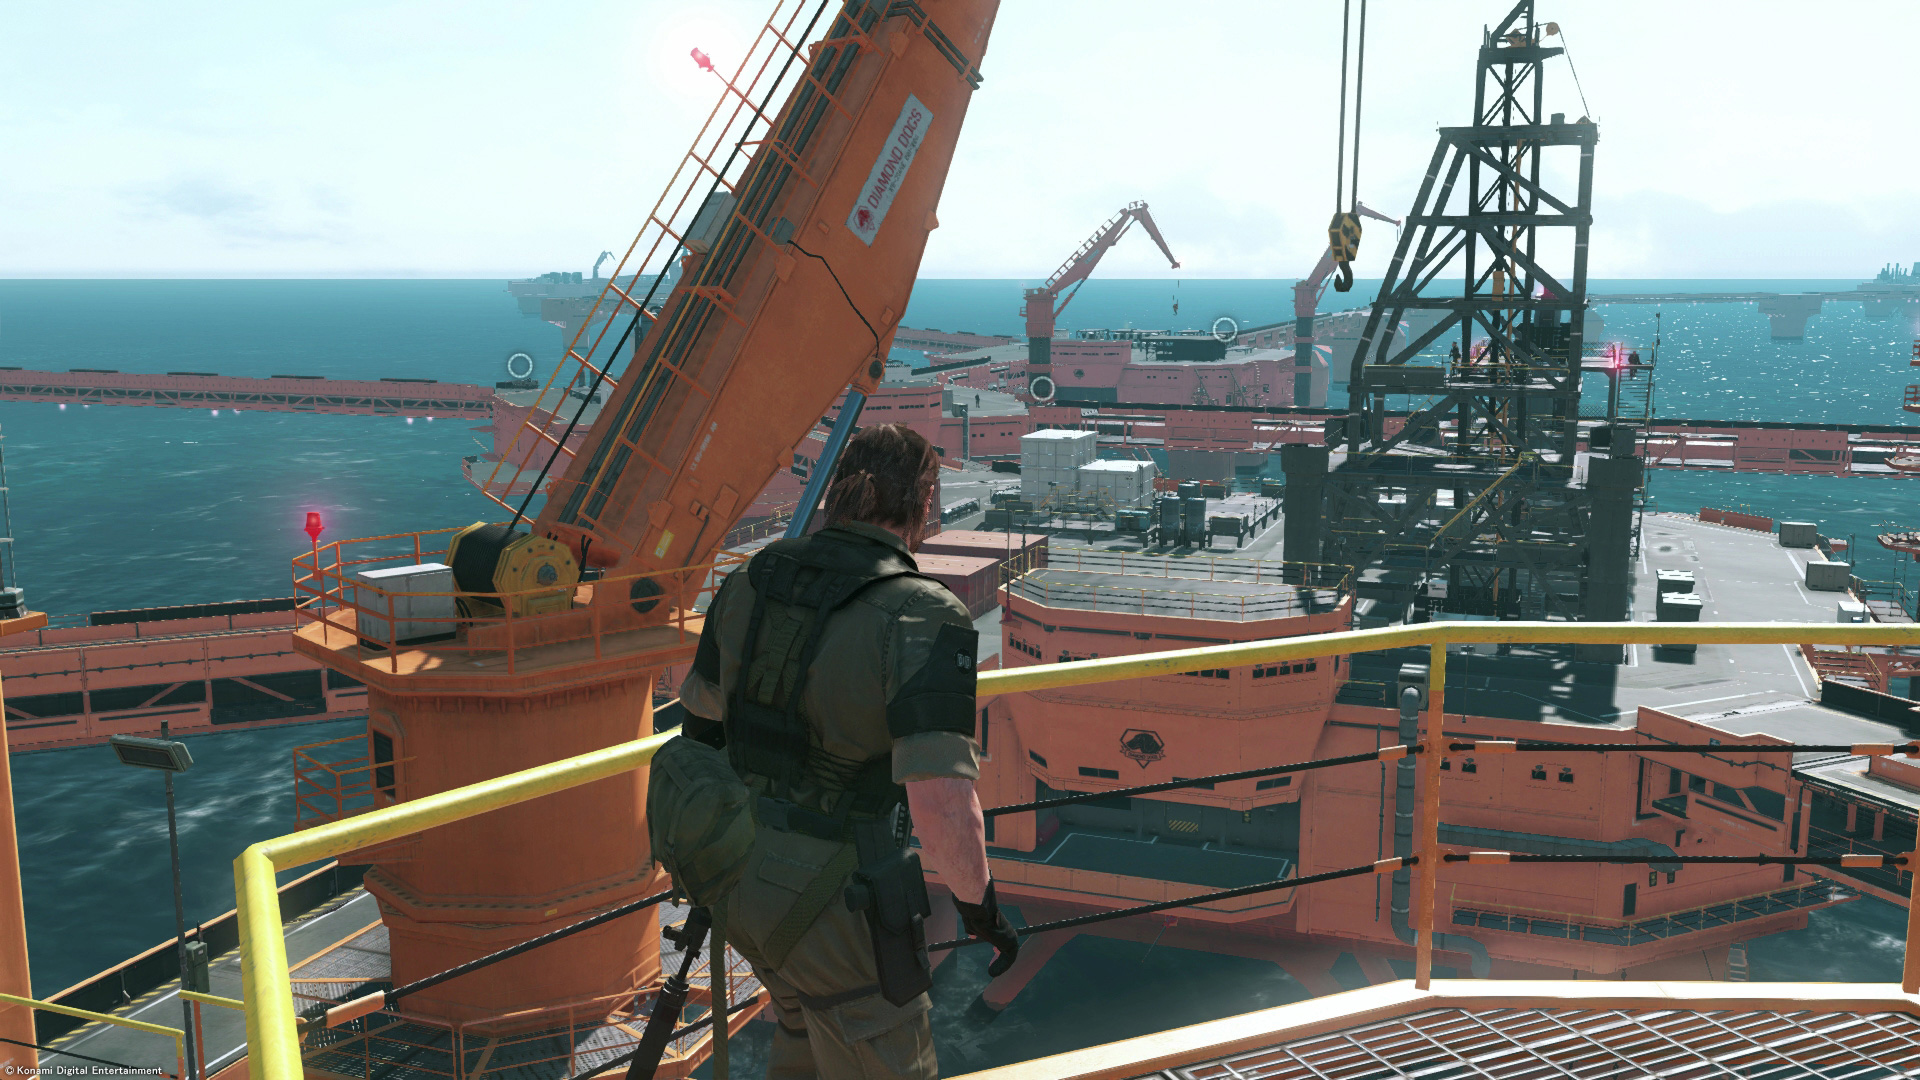 Metal Gear Solid V: The Phantom Pain, Gamescom Trailer